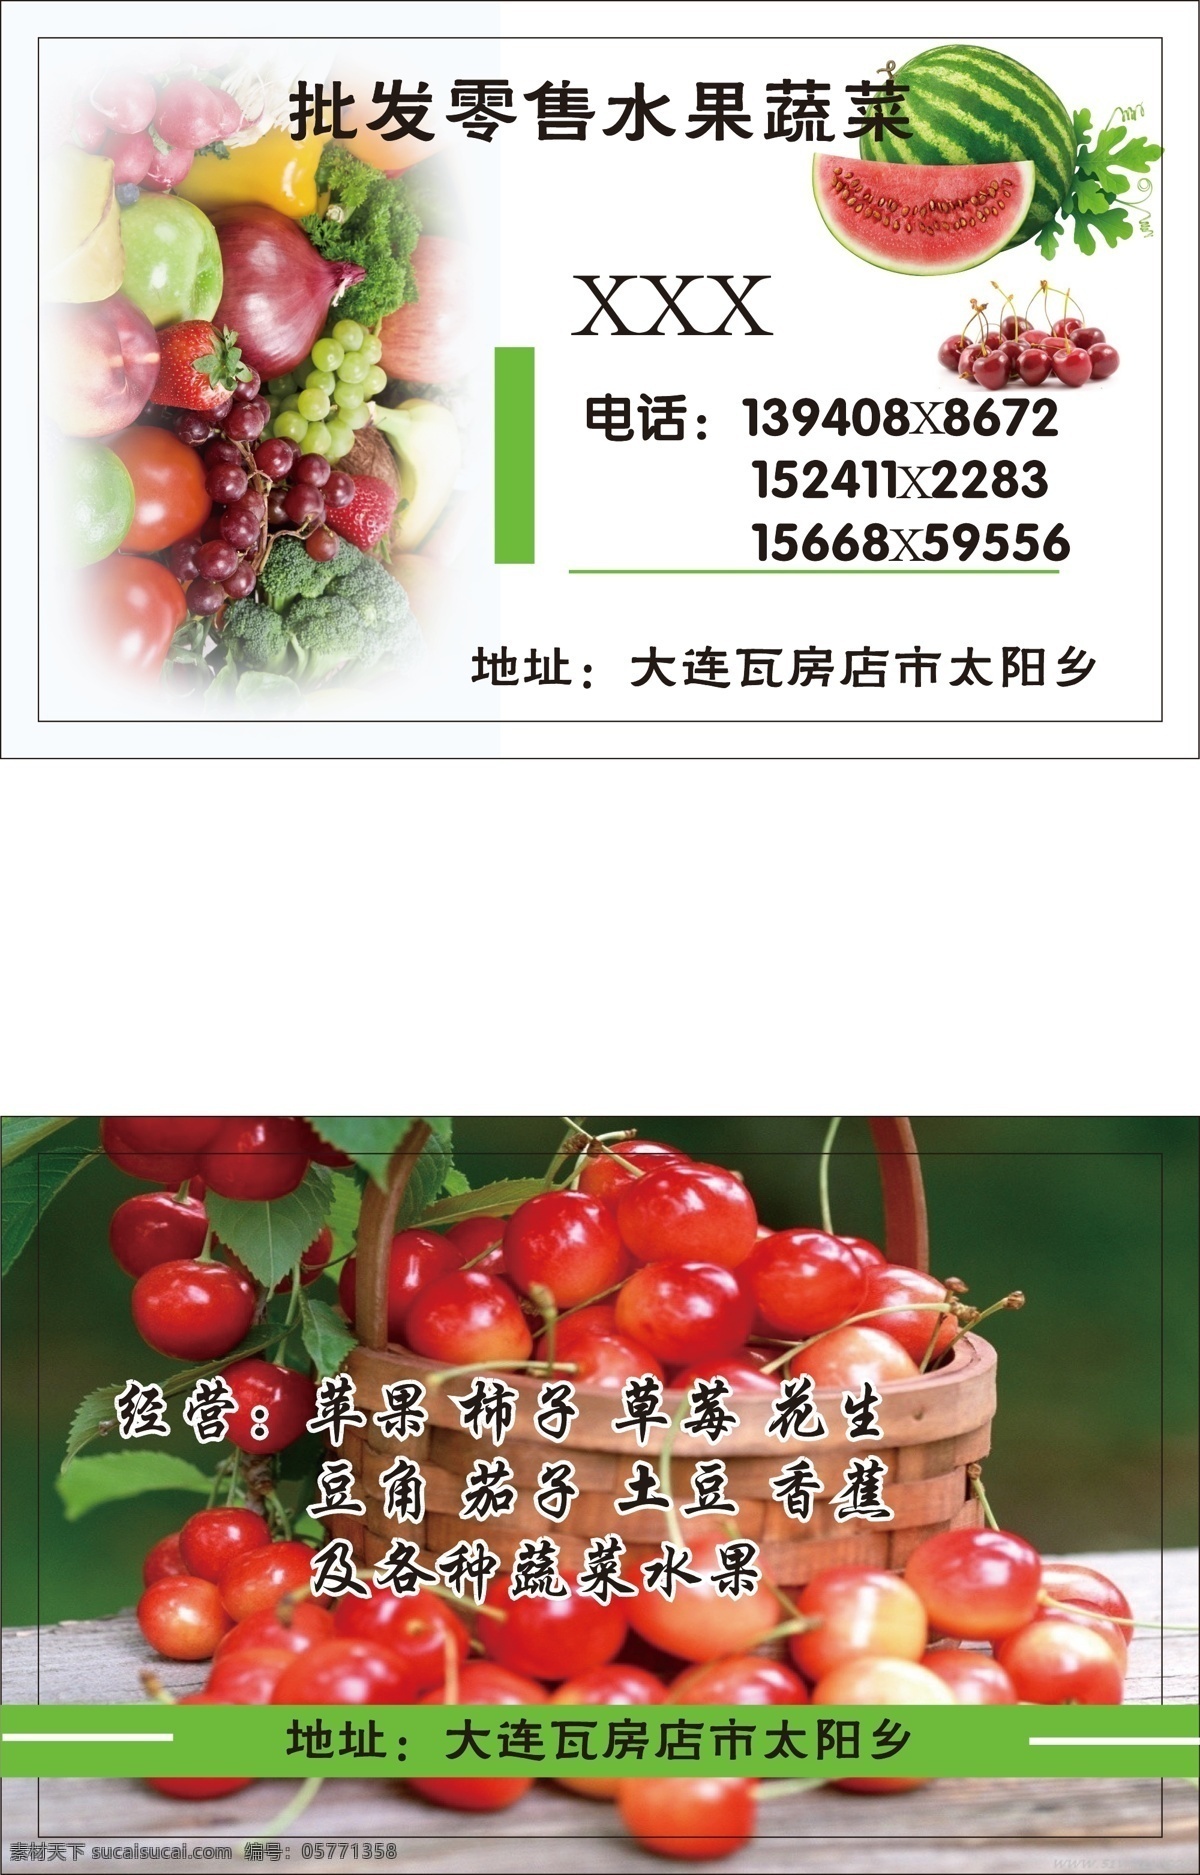 名片 绿色 名片卡片 名片模板下载 名片矢量素材 批发 蔬菜 水果 矢量 矢量图 日常生活